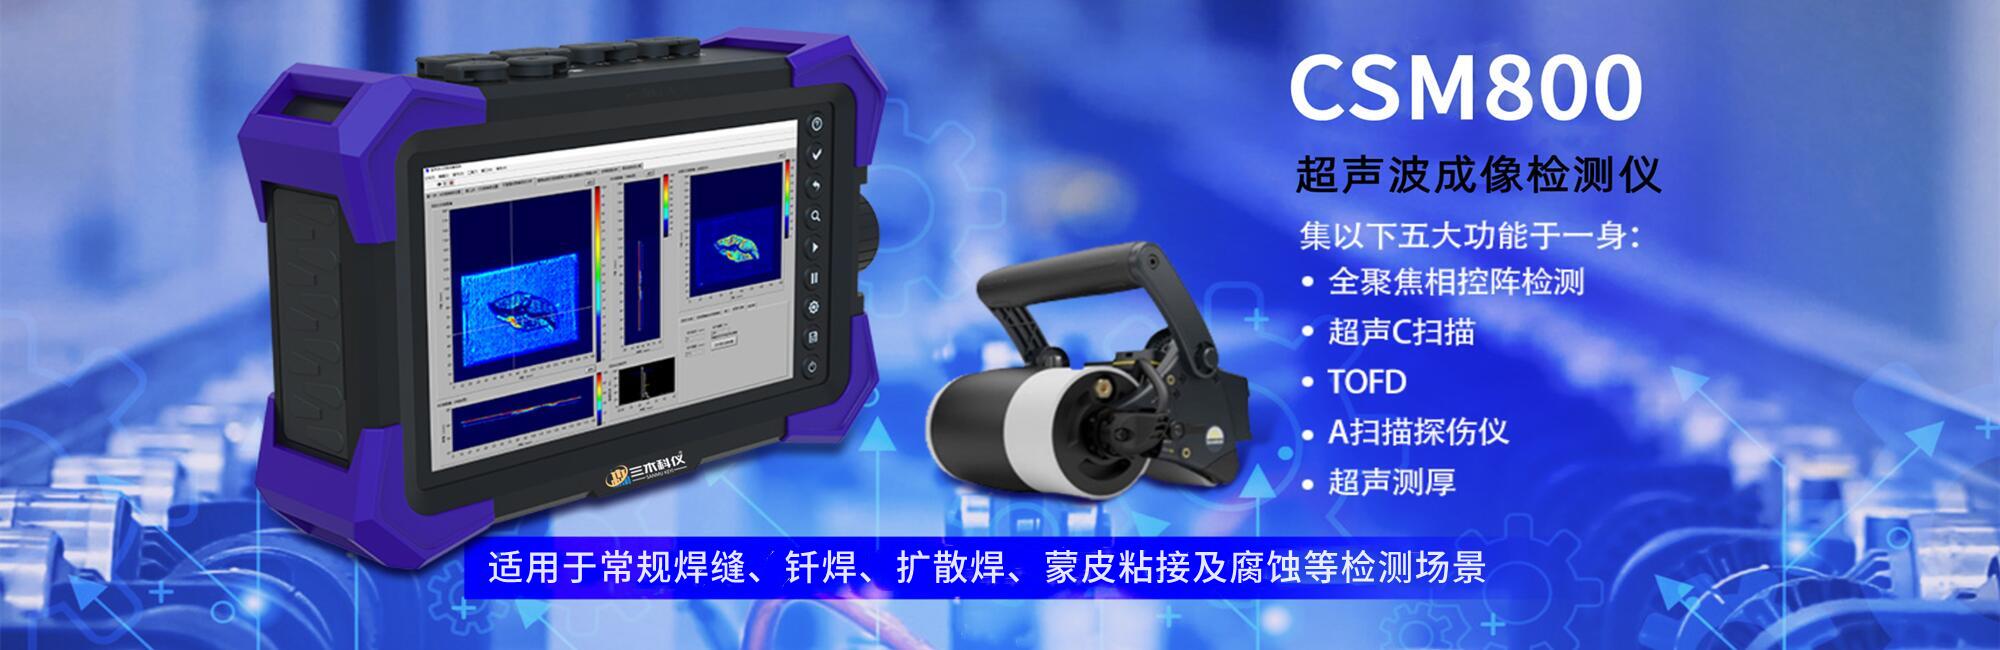 CSM800便攜式超聲波成像檢測儀